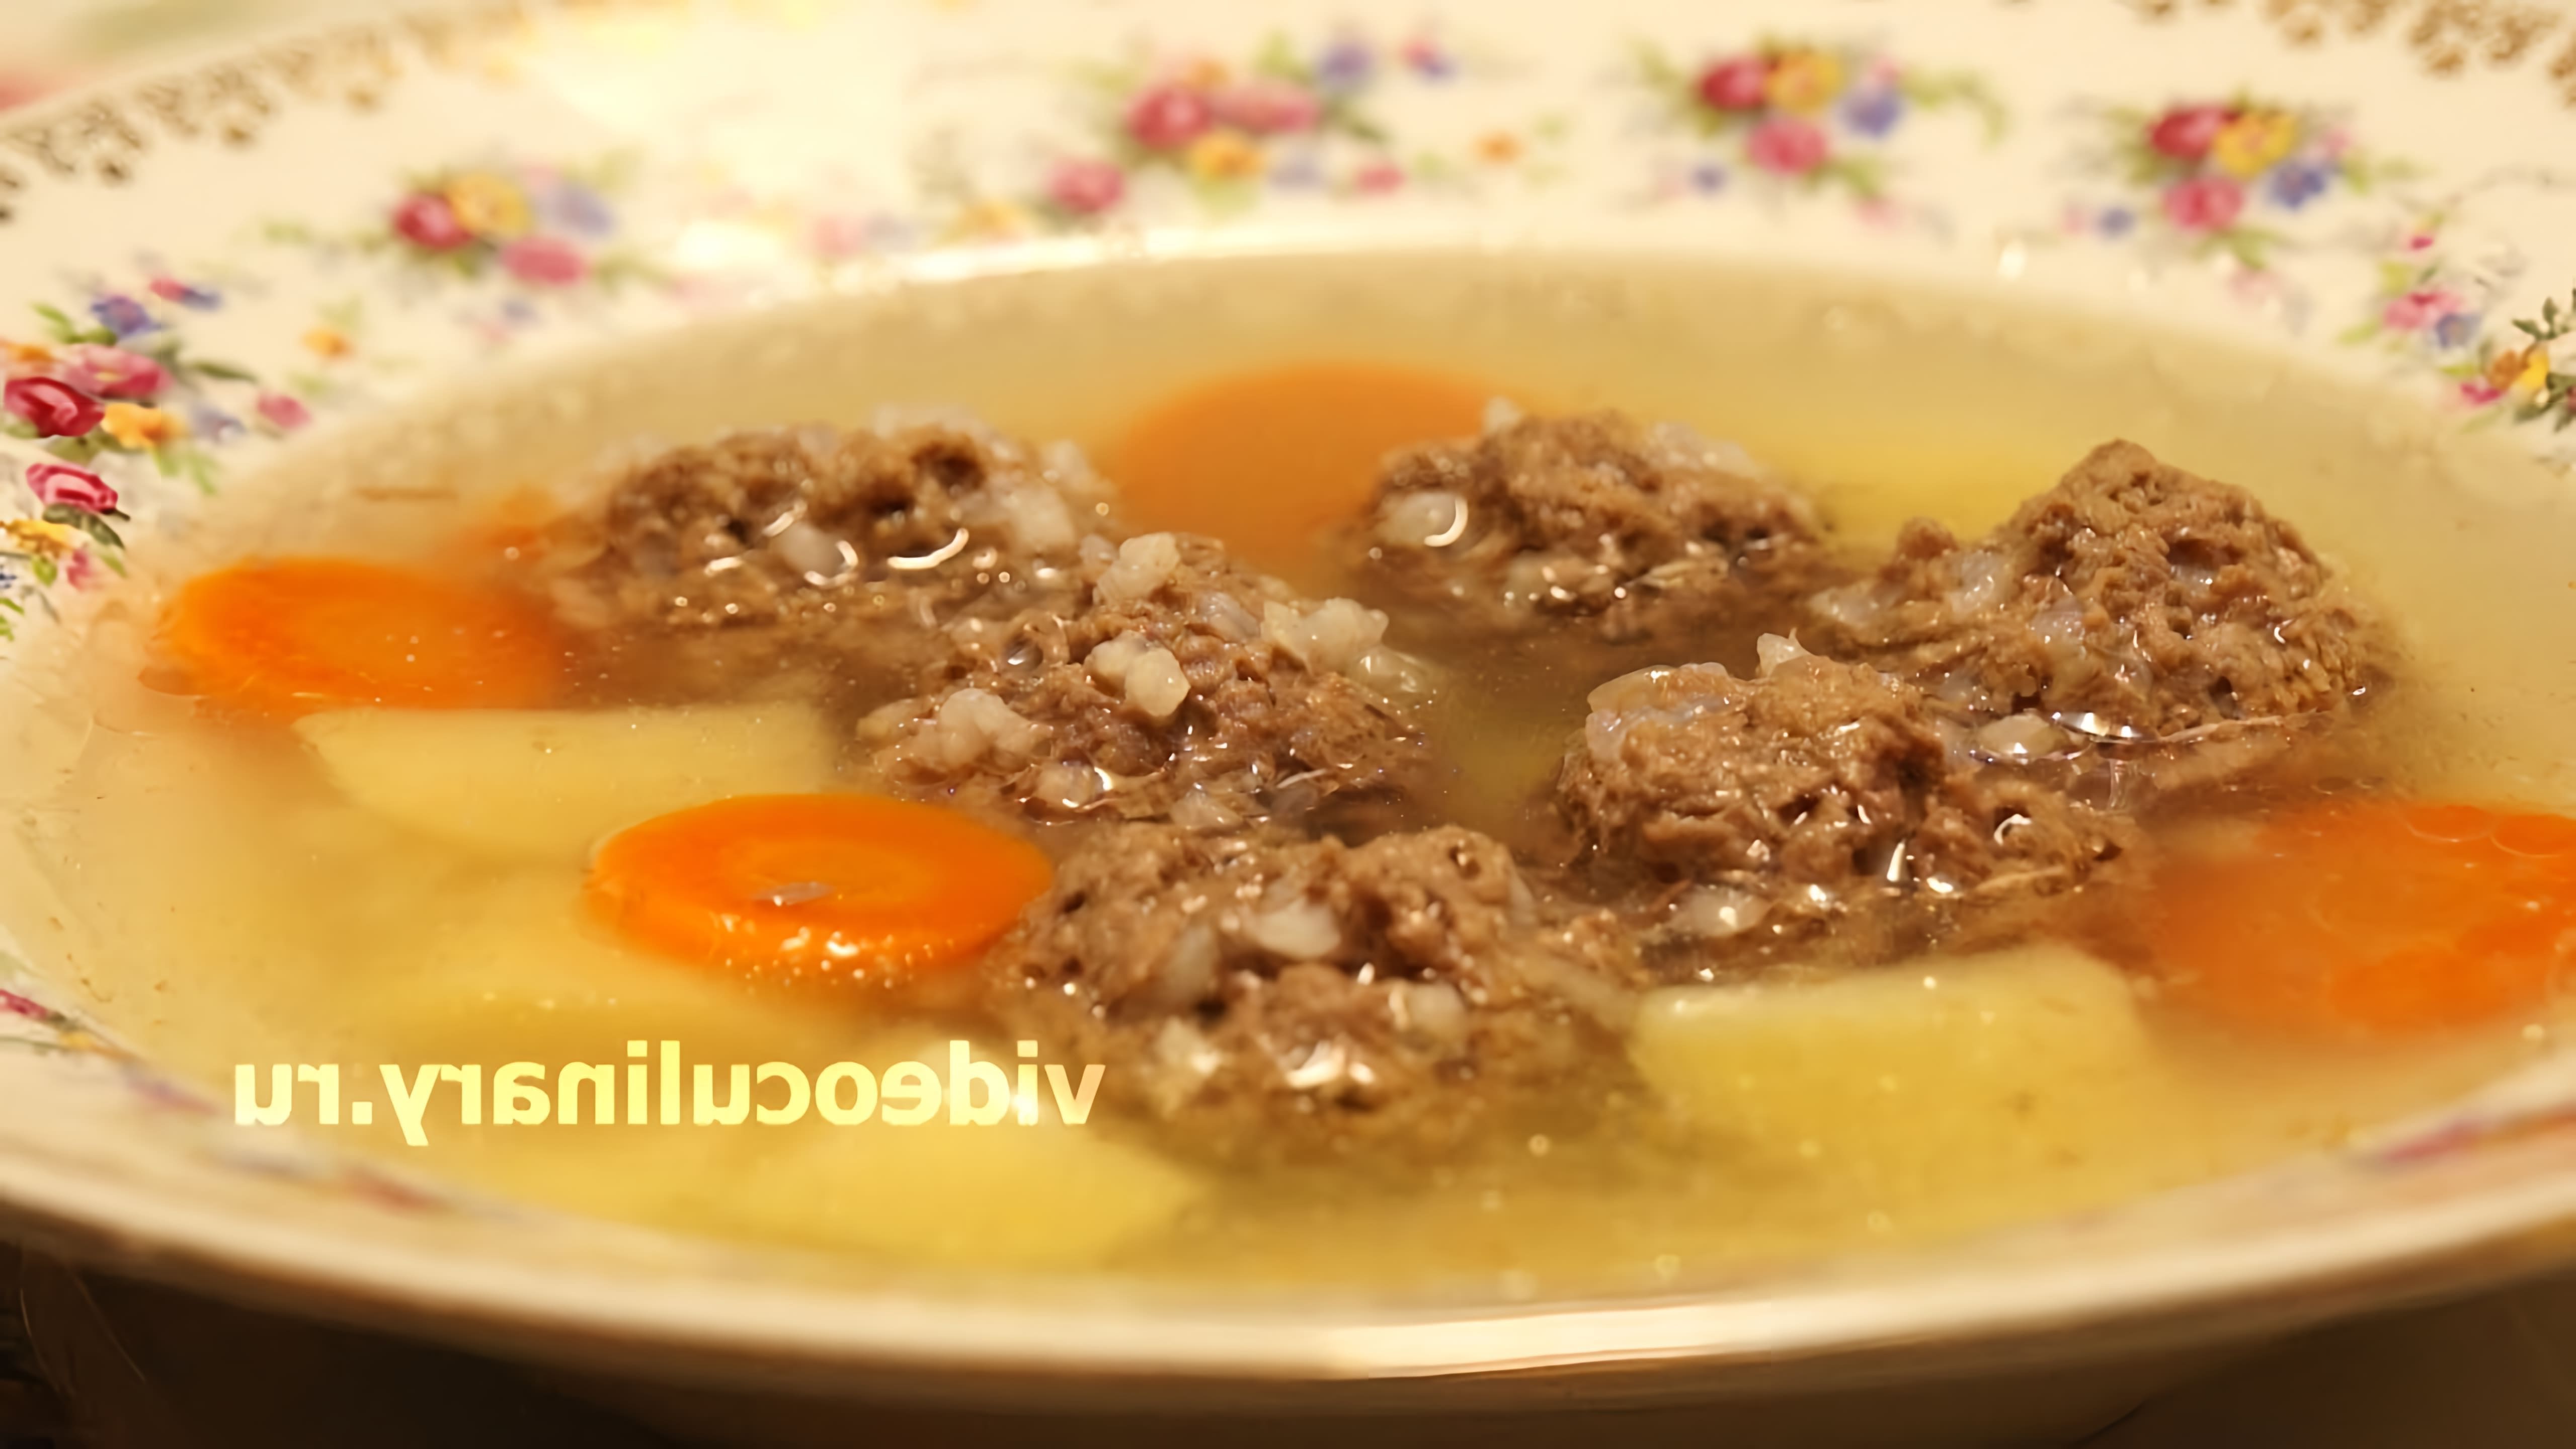 В этом видео демонстрируется рецепт приготовления супа с фрикадельками от Бабушки Эммы